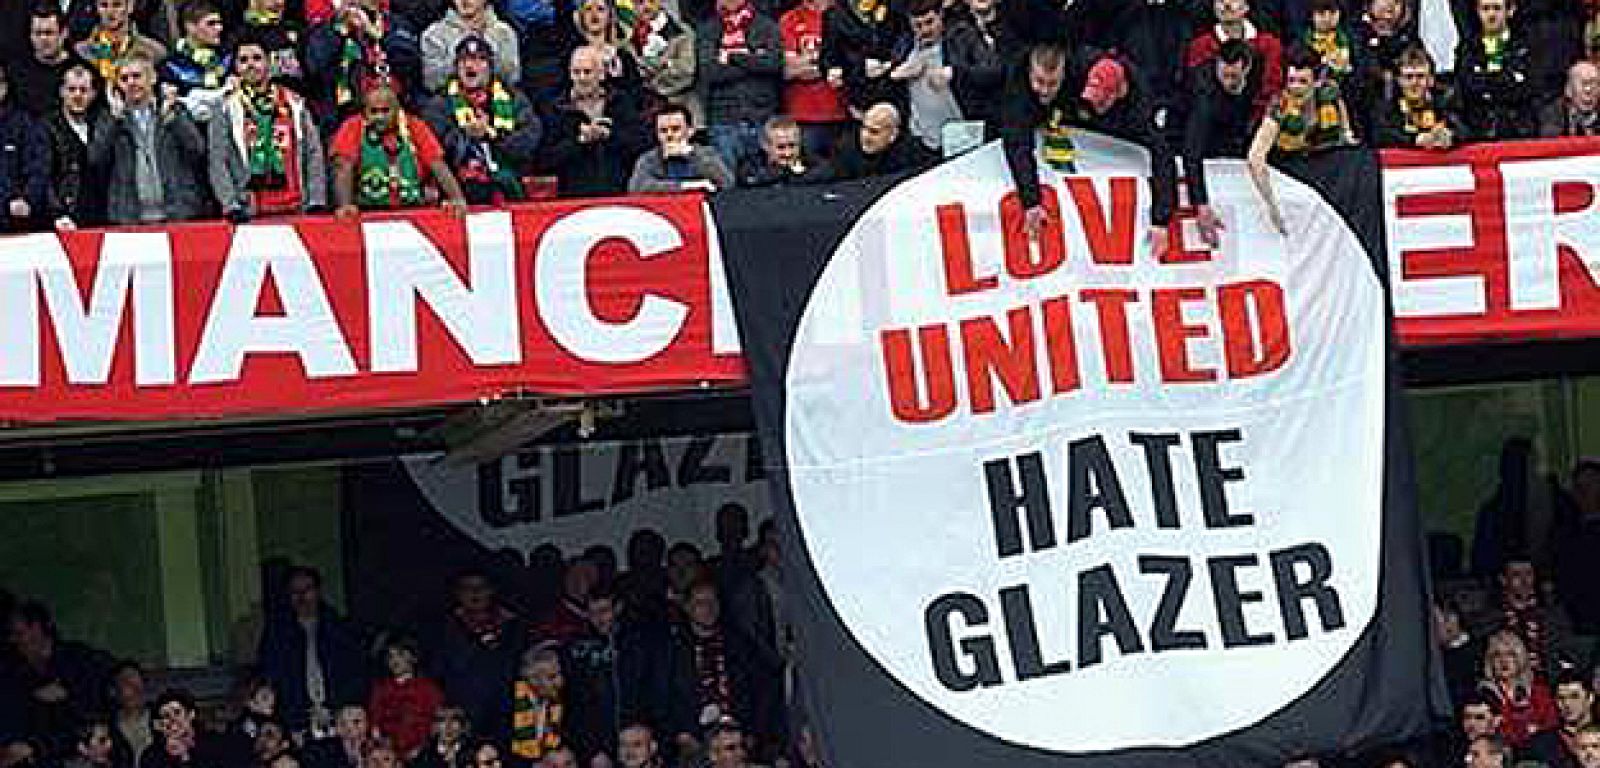 'Love United Hate Glazer' se ha convertido en lema de los aficionados contrarios a los dueños del club, junto con las bufandas verdes y doradas